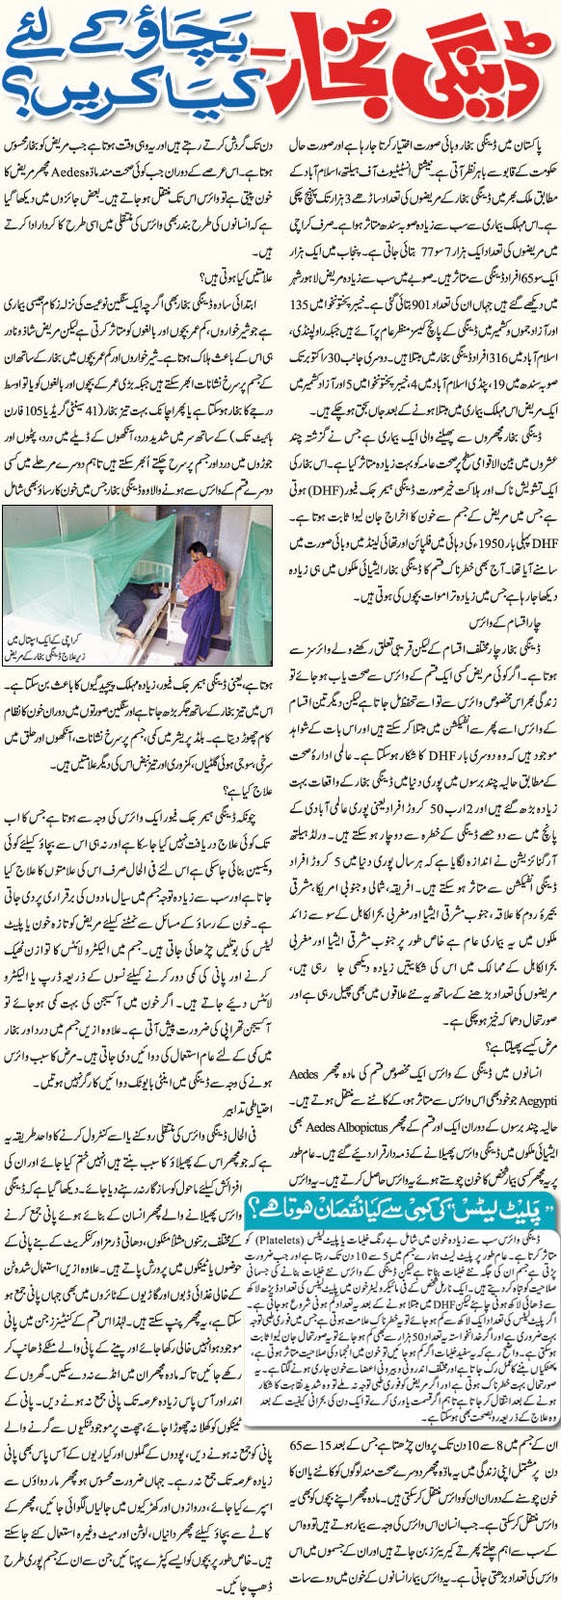 Dengue virus in pakistan essay in urdu - dissertationadviser.x.fc2.com